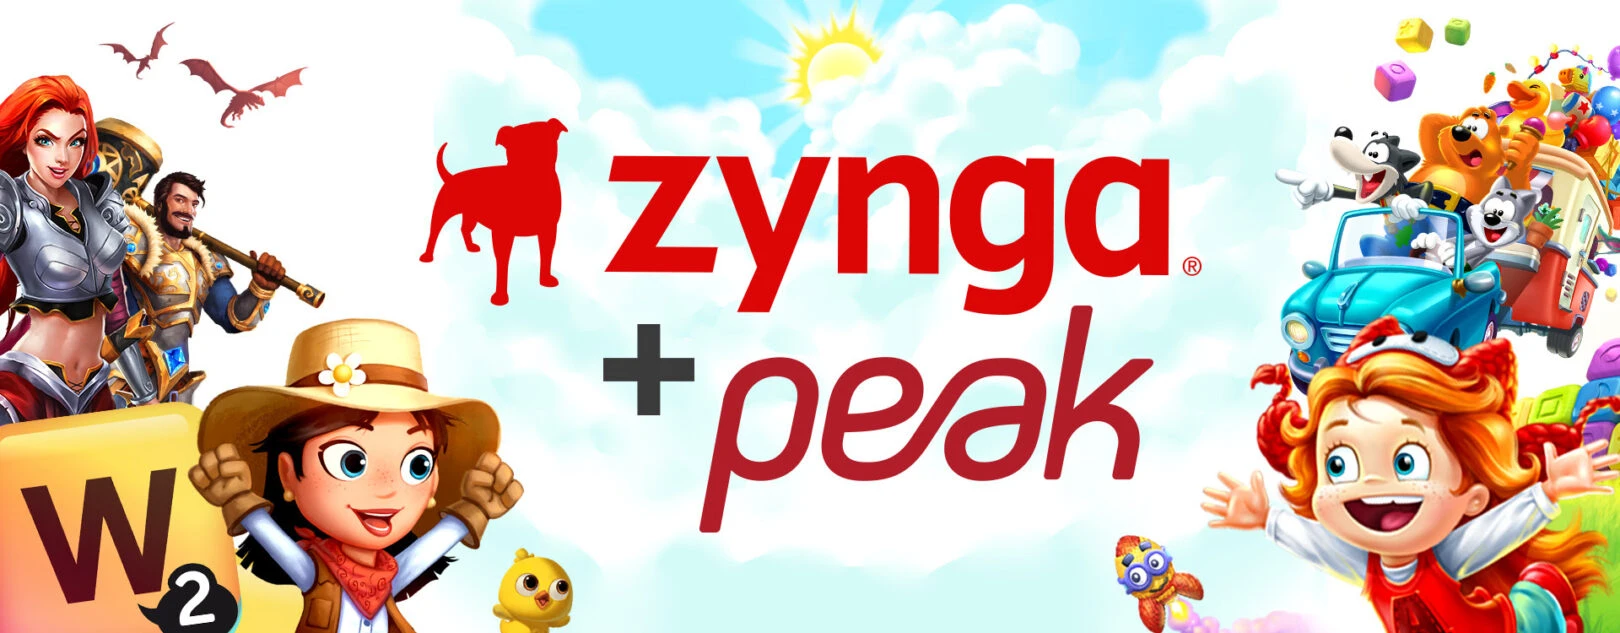 Peak Games von Zynga für 1,8 Milliarden Dollar erworben